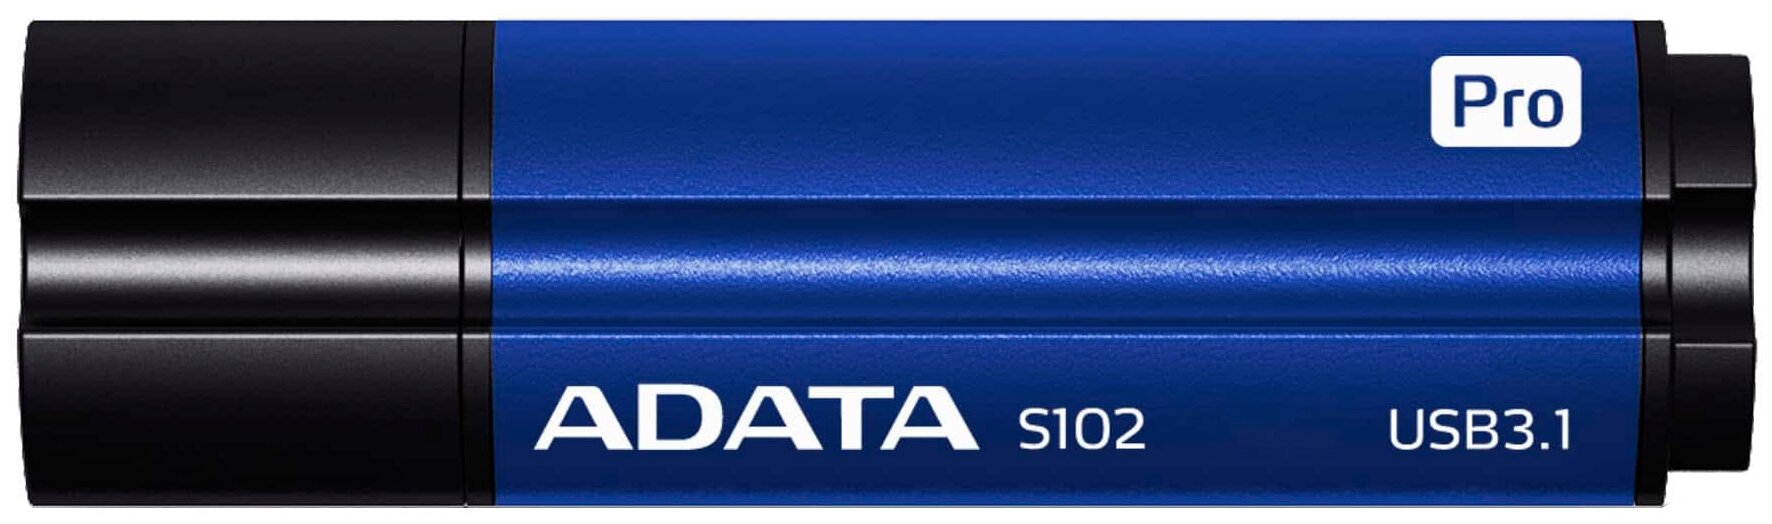 USB 3.0 Flash Drive 16GB ADATA Superior S102 Pro, синий алюминий (AS102P-16G-RBL)